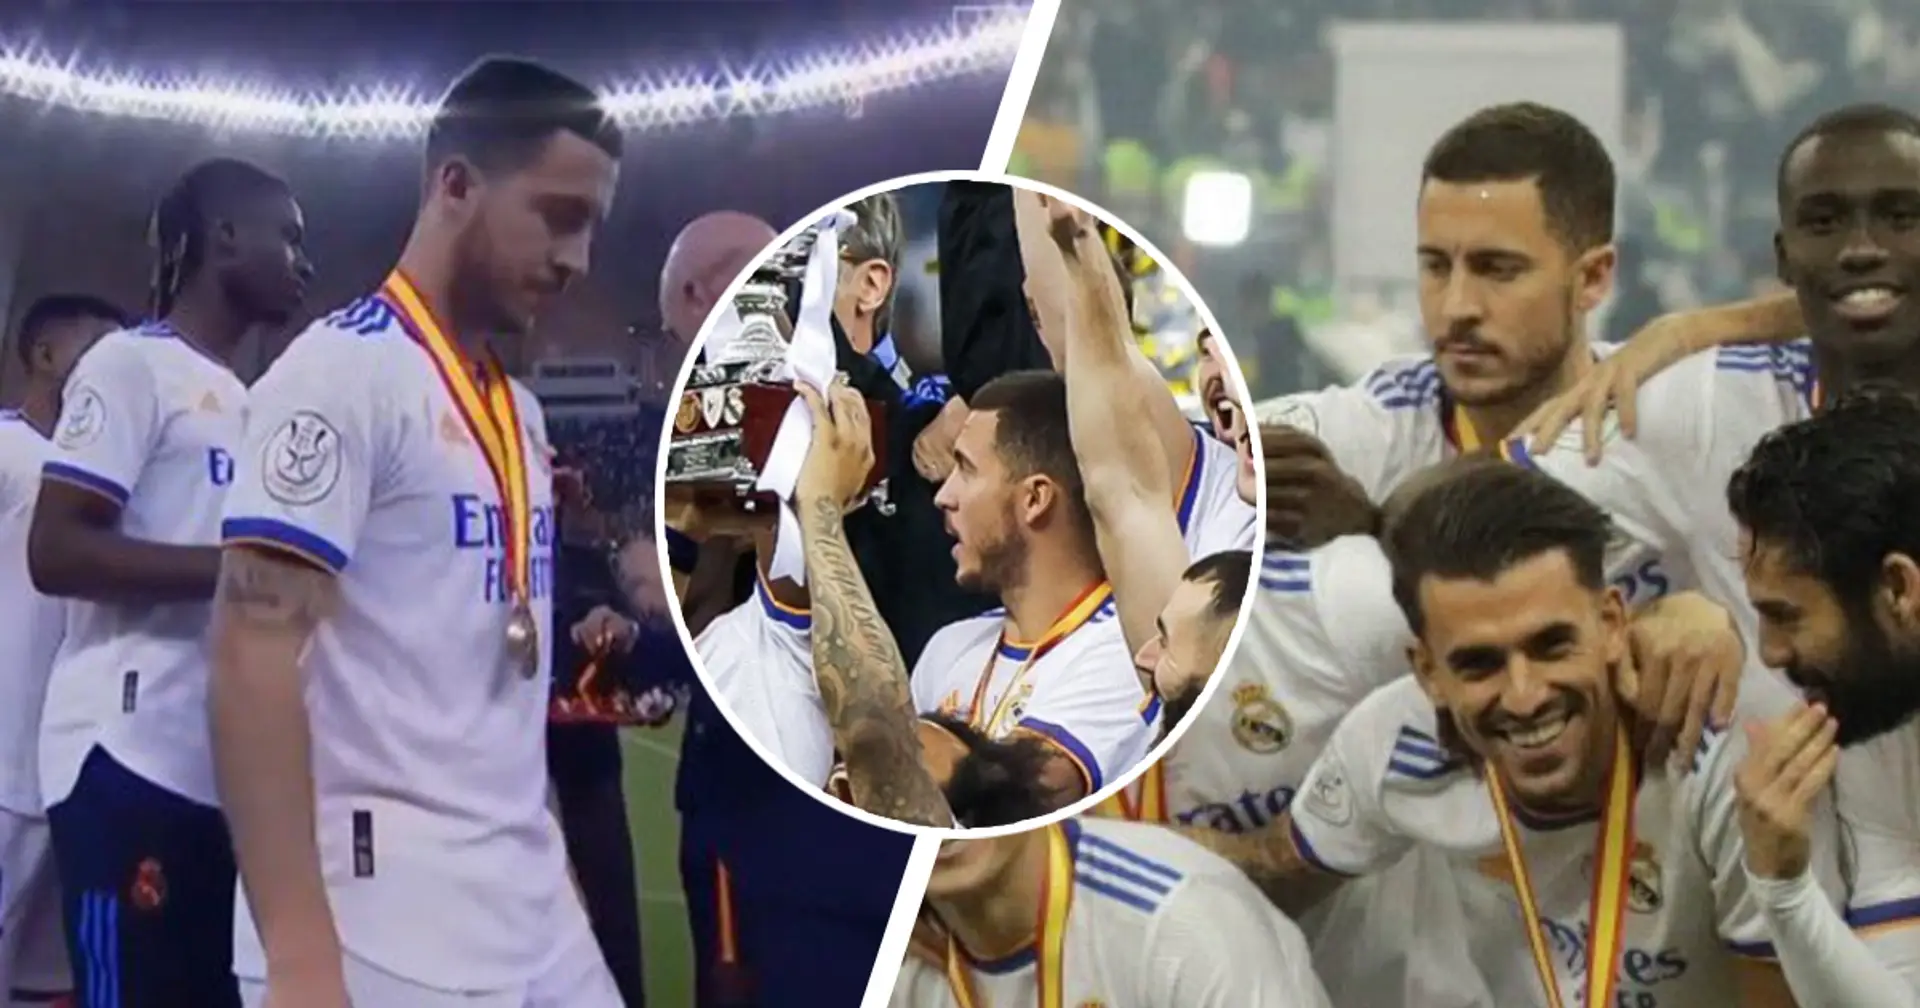 Hazard lächelt nicht während der Feierlichkeiten zum spanischen Supercup von Real, herzzerreißende Szenen 